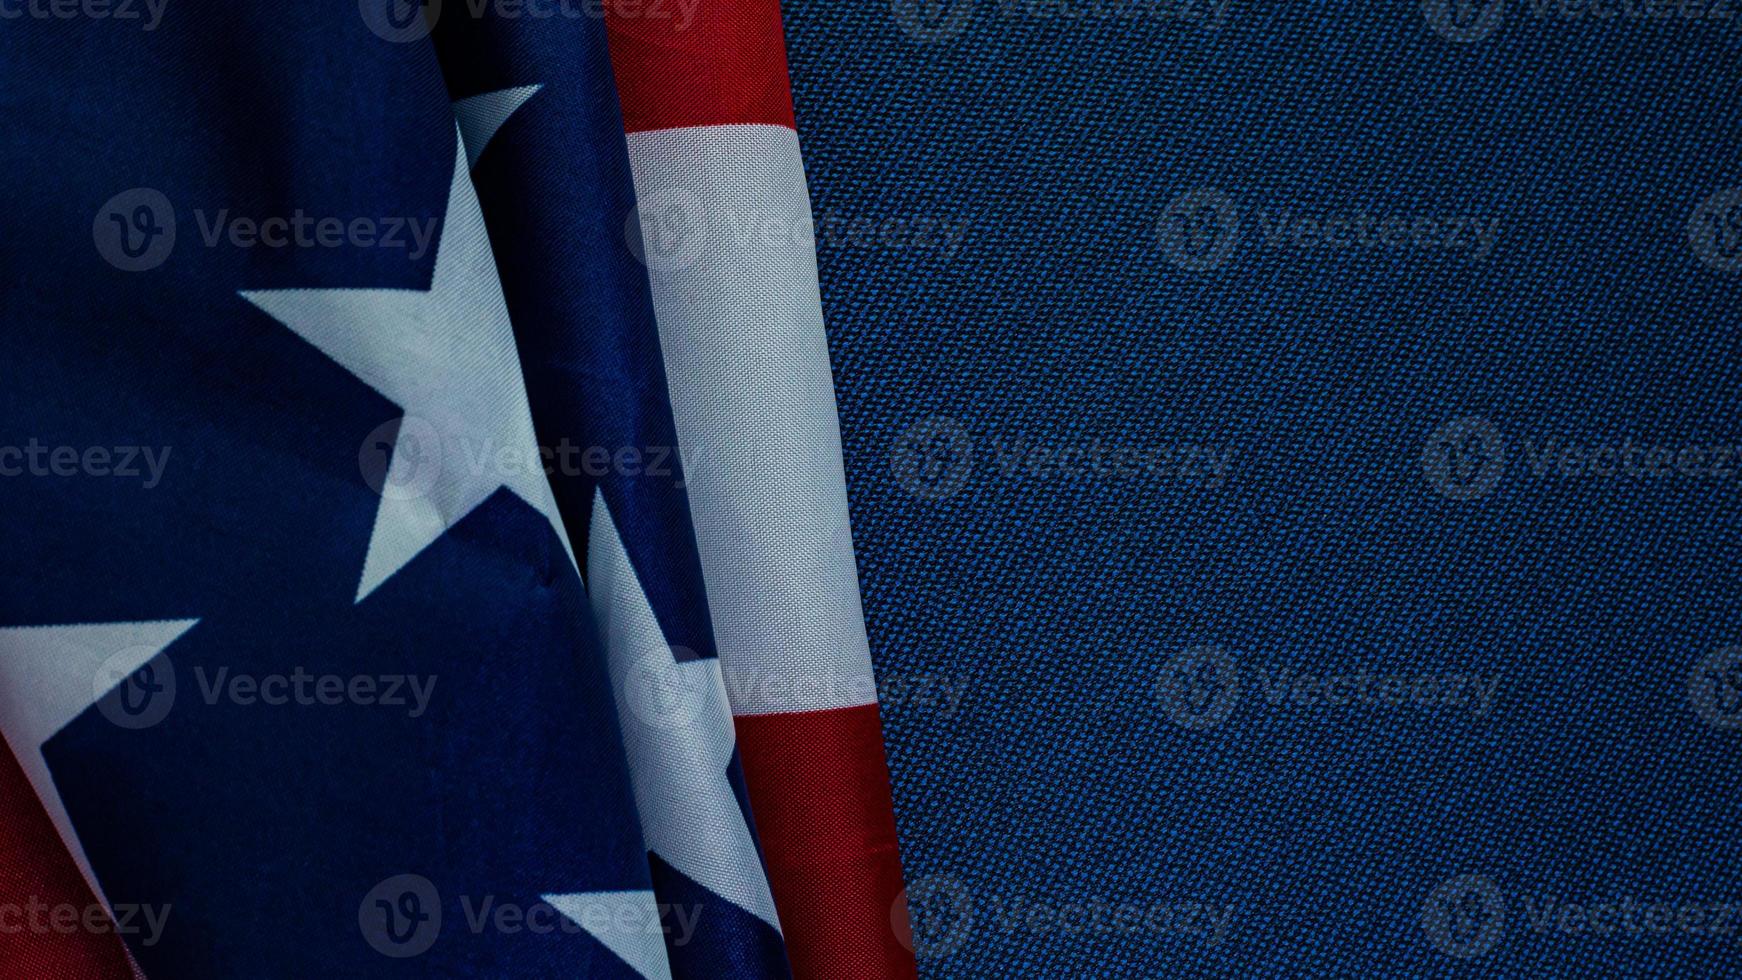 bandera estadounidense en el contenido azul del día de la independencia. foto